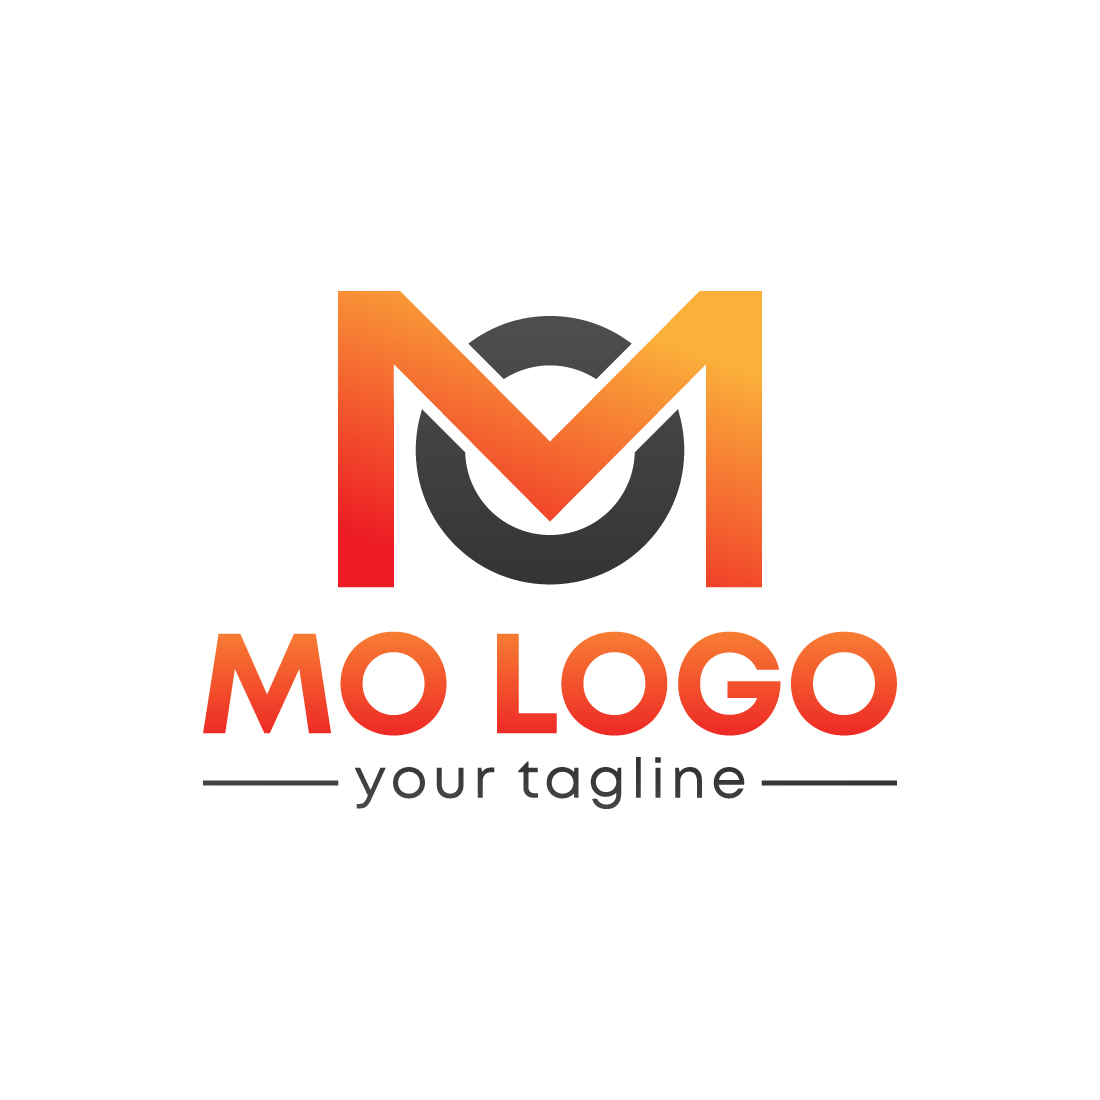 MO logo design preview image.